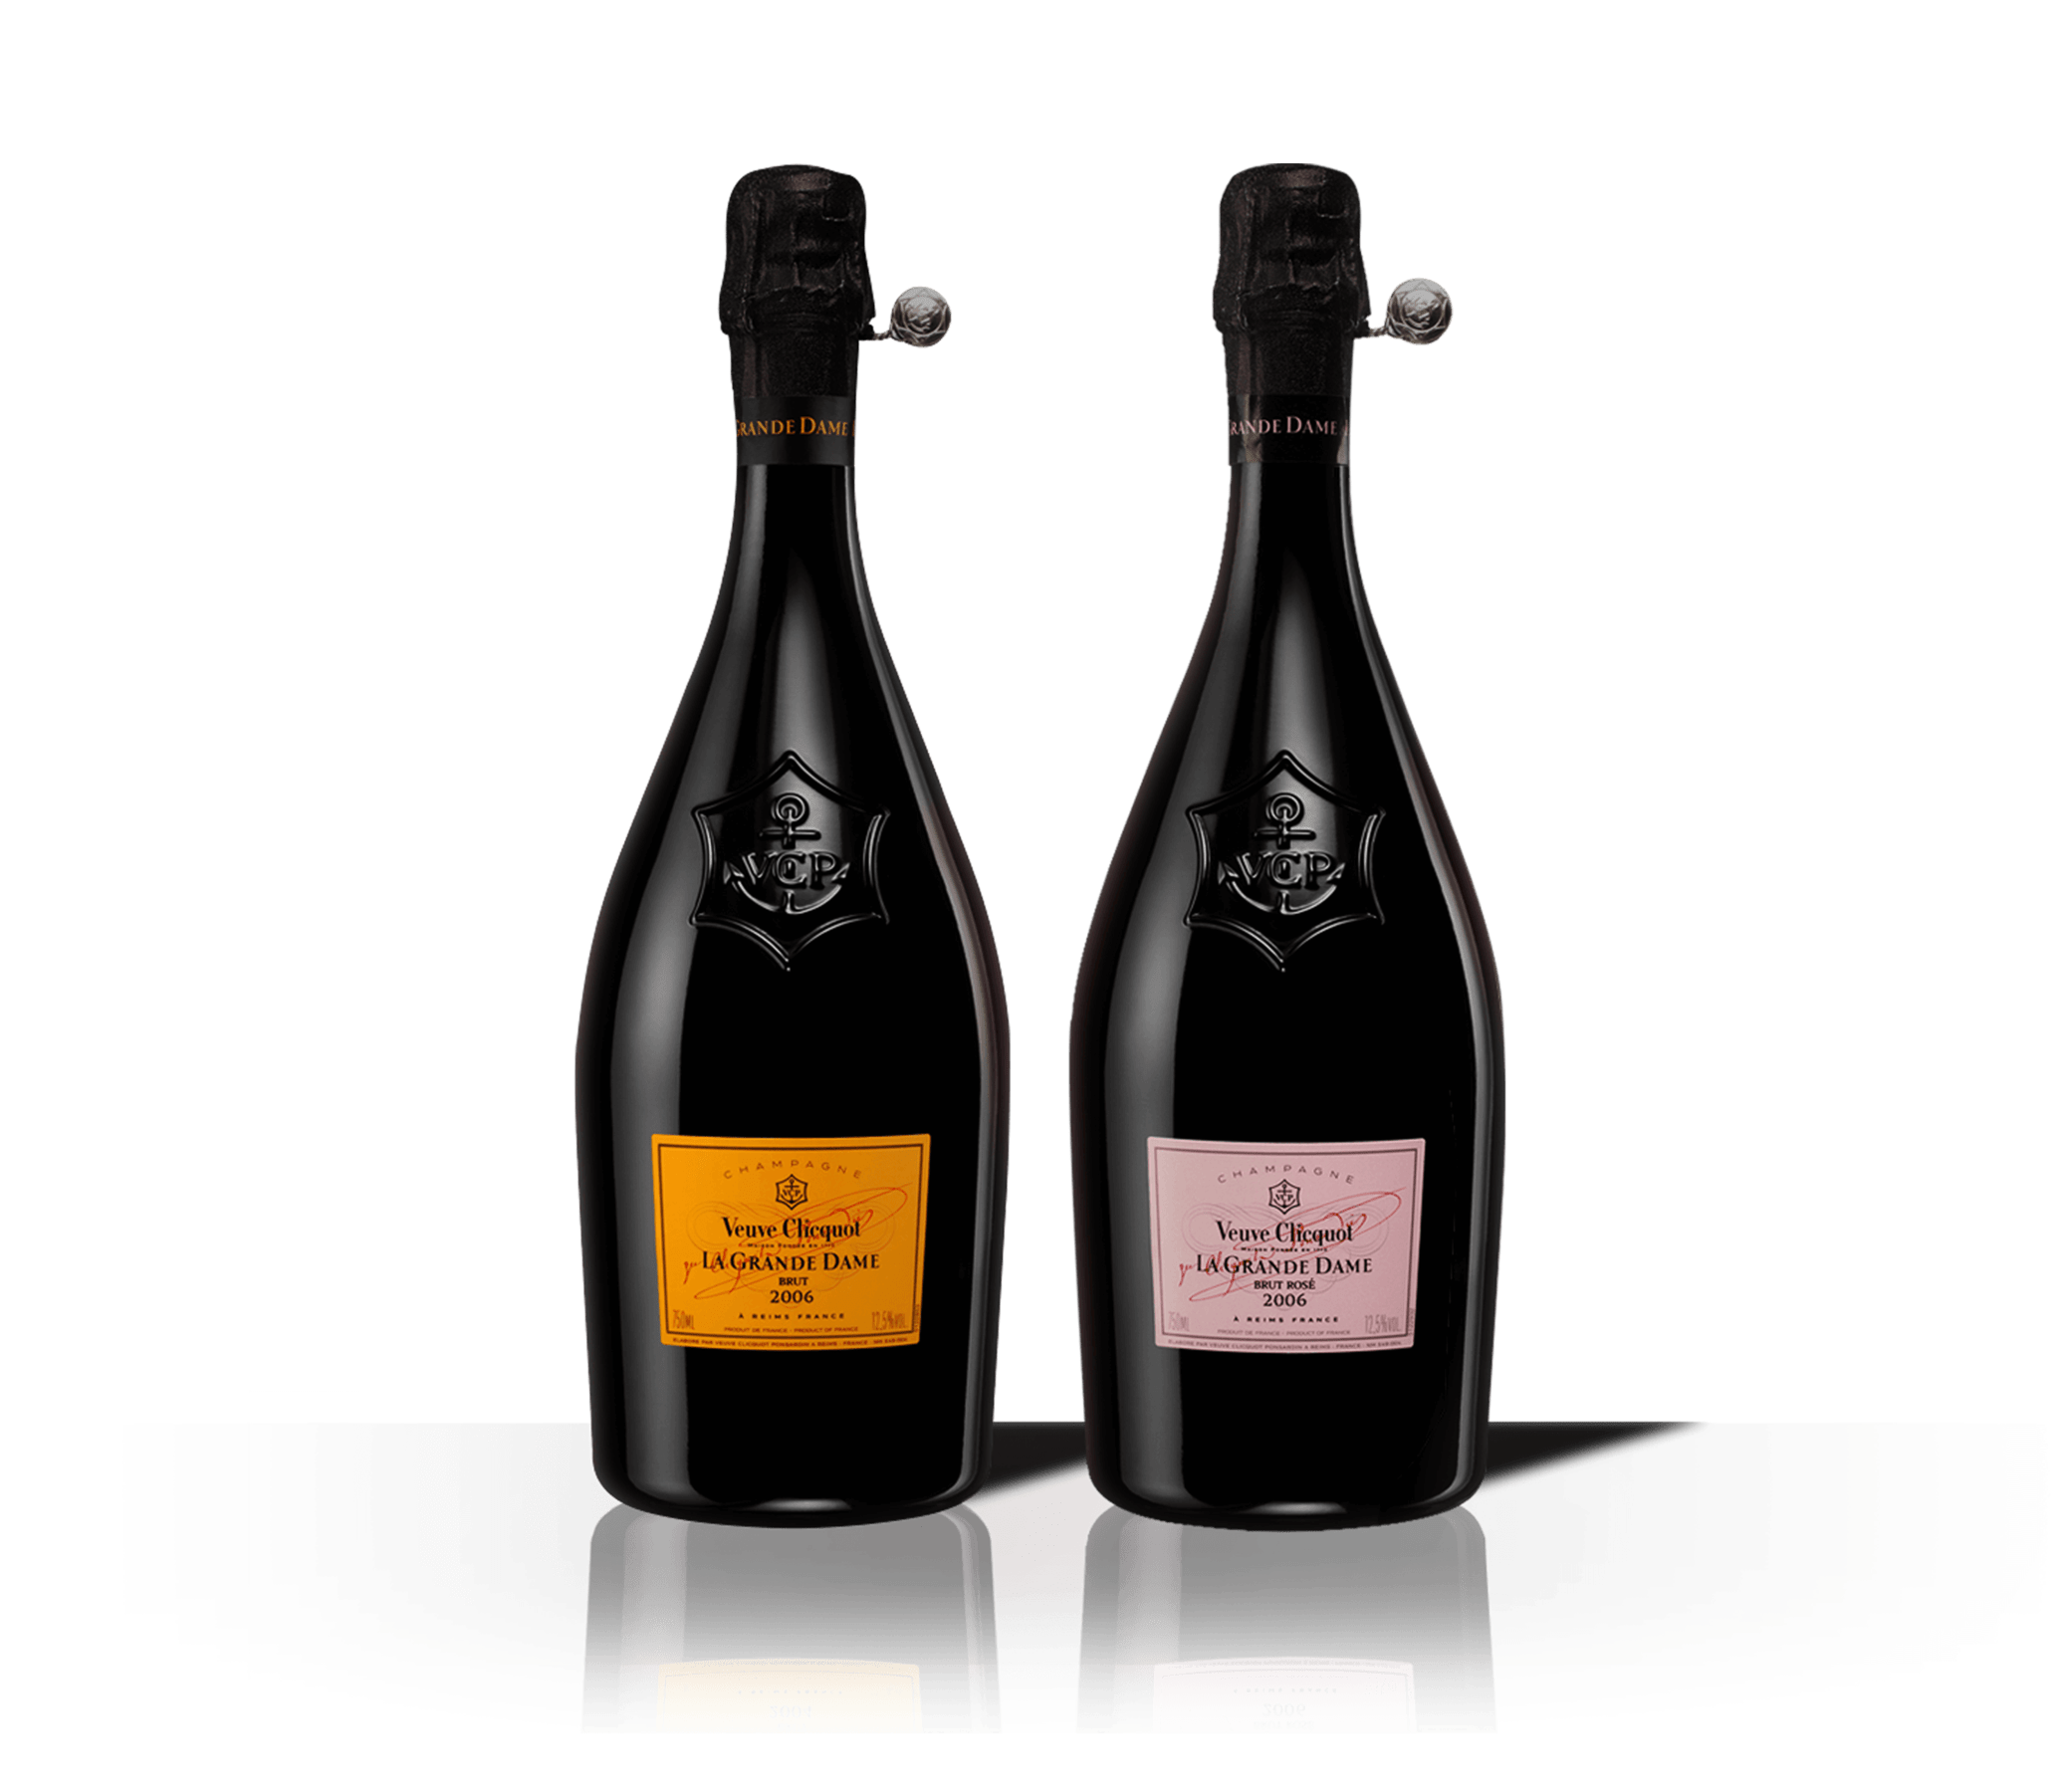 Flaschen Veuve Clicquot Champagner La Grande Dame 2008